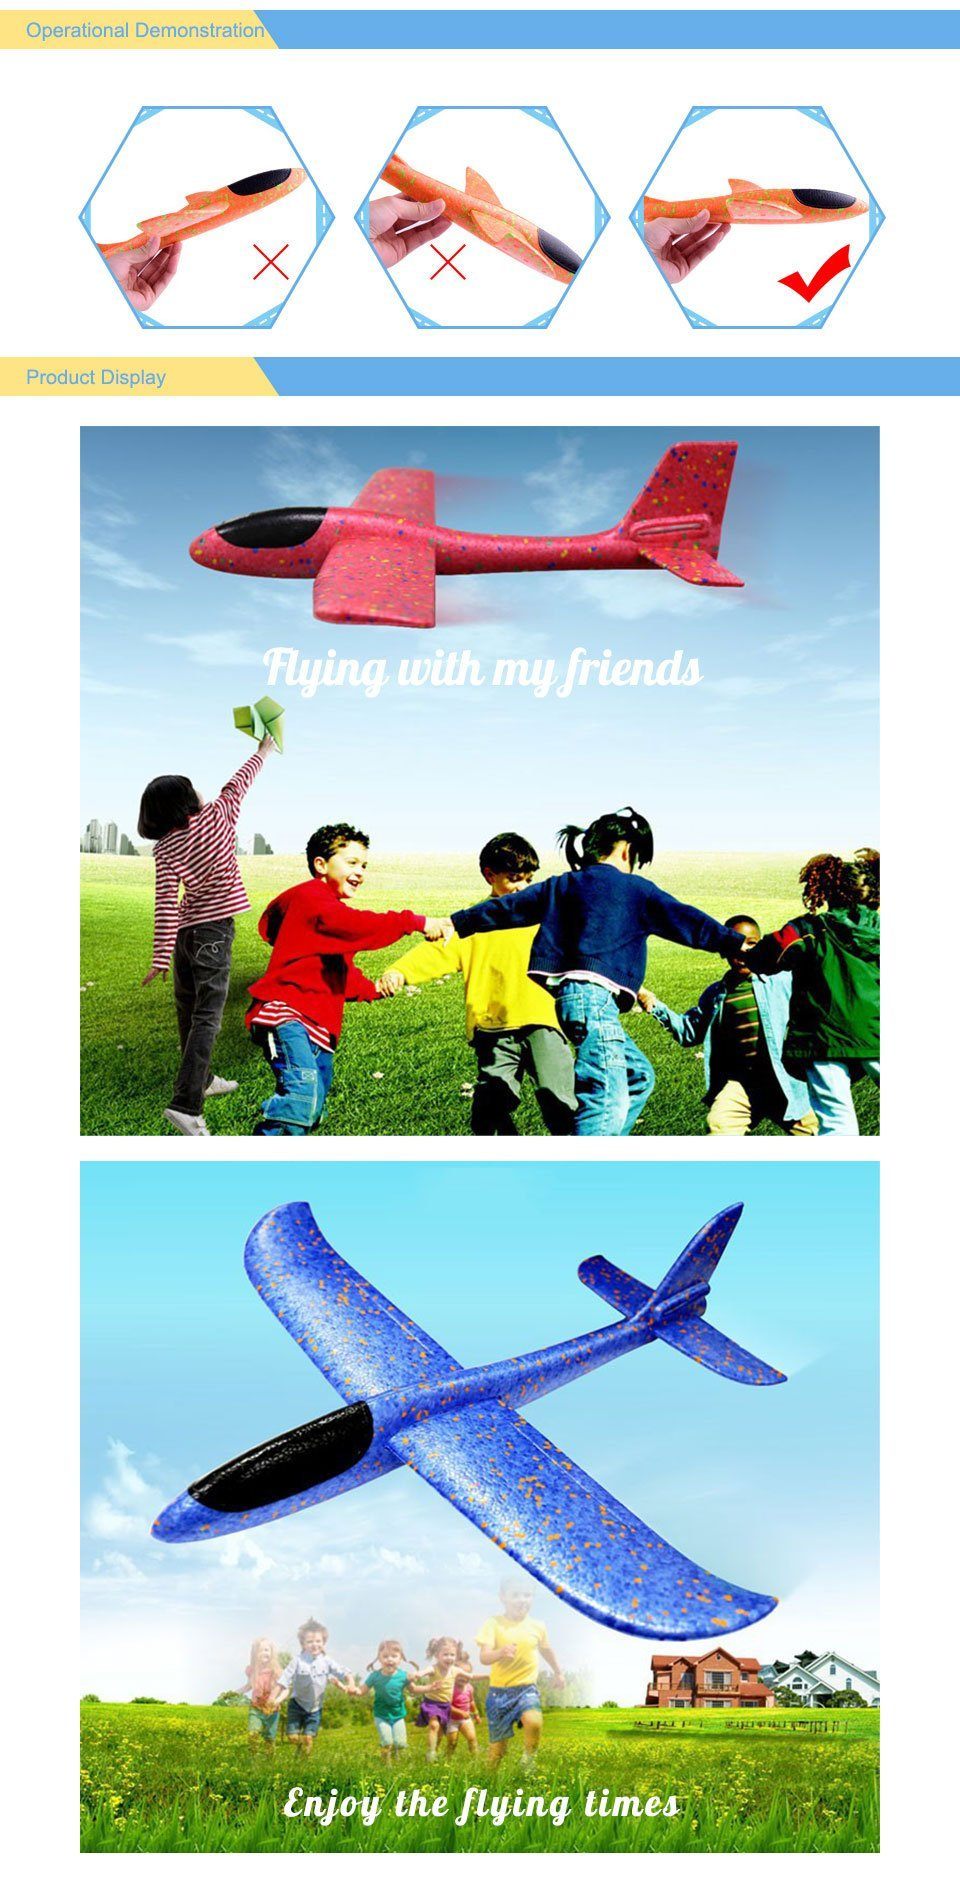 Avion planeur en polystyrène